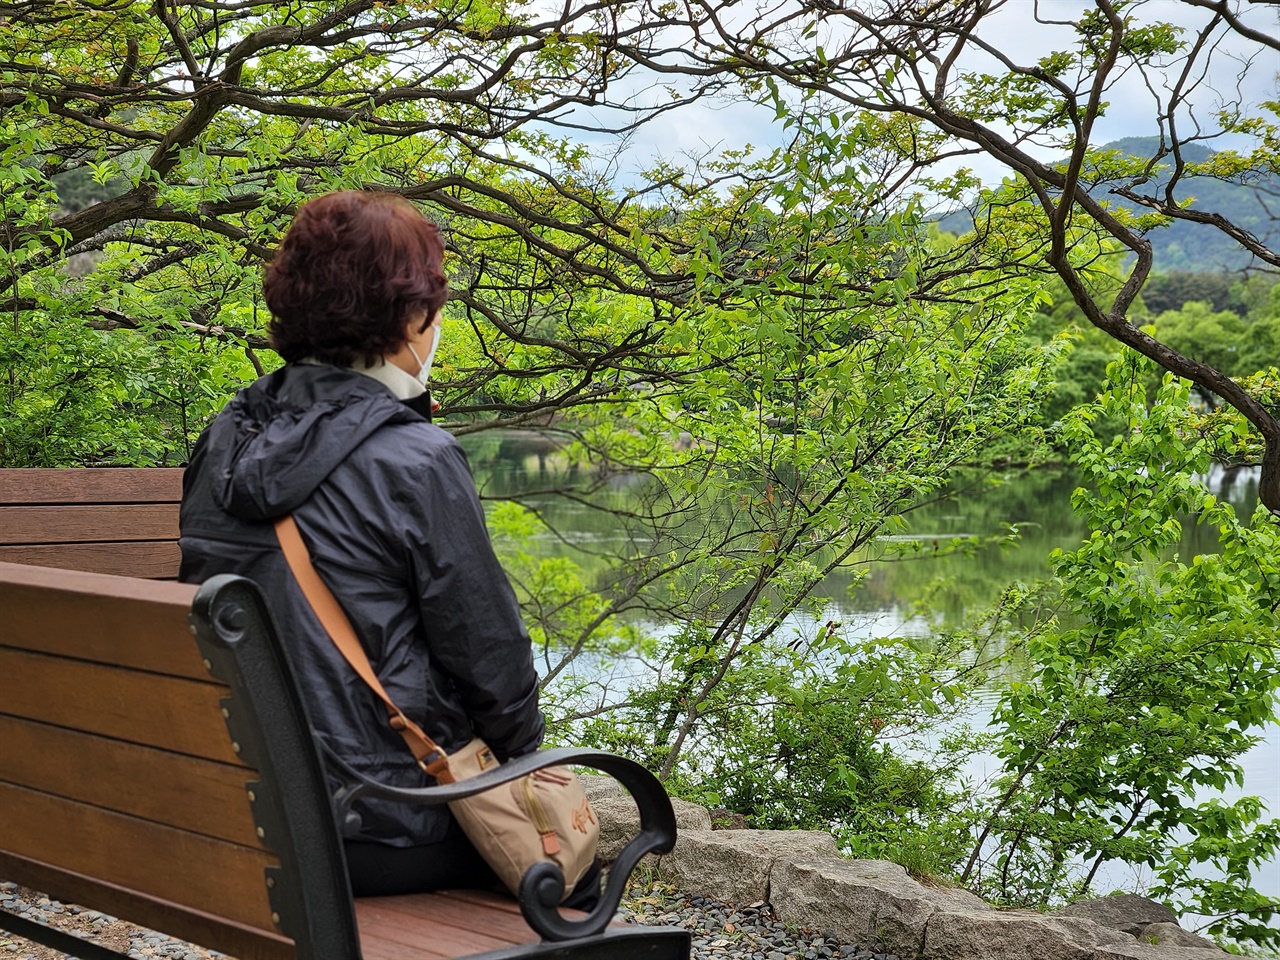  밀양 위양못 곳곳에 설치된 벤치에 앉아 명상과 산림욕을 즐기는 모습(2022.4.30.오전 촬영)